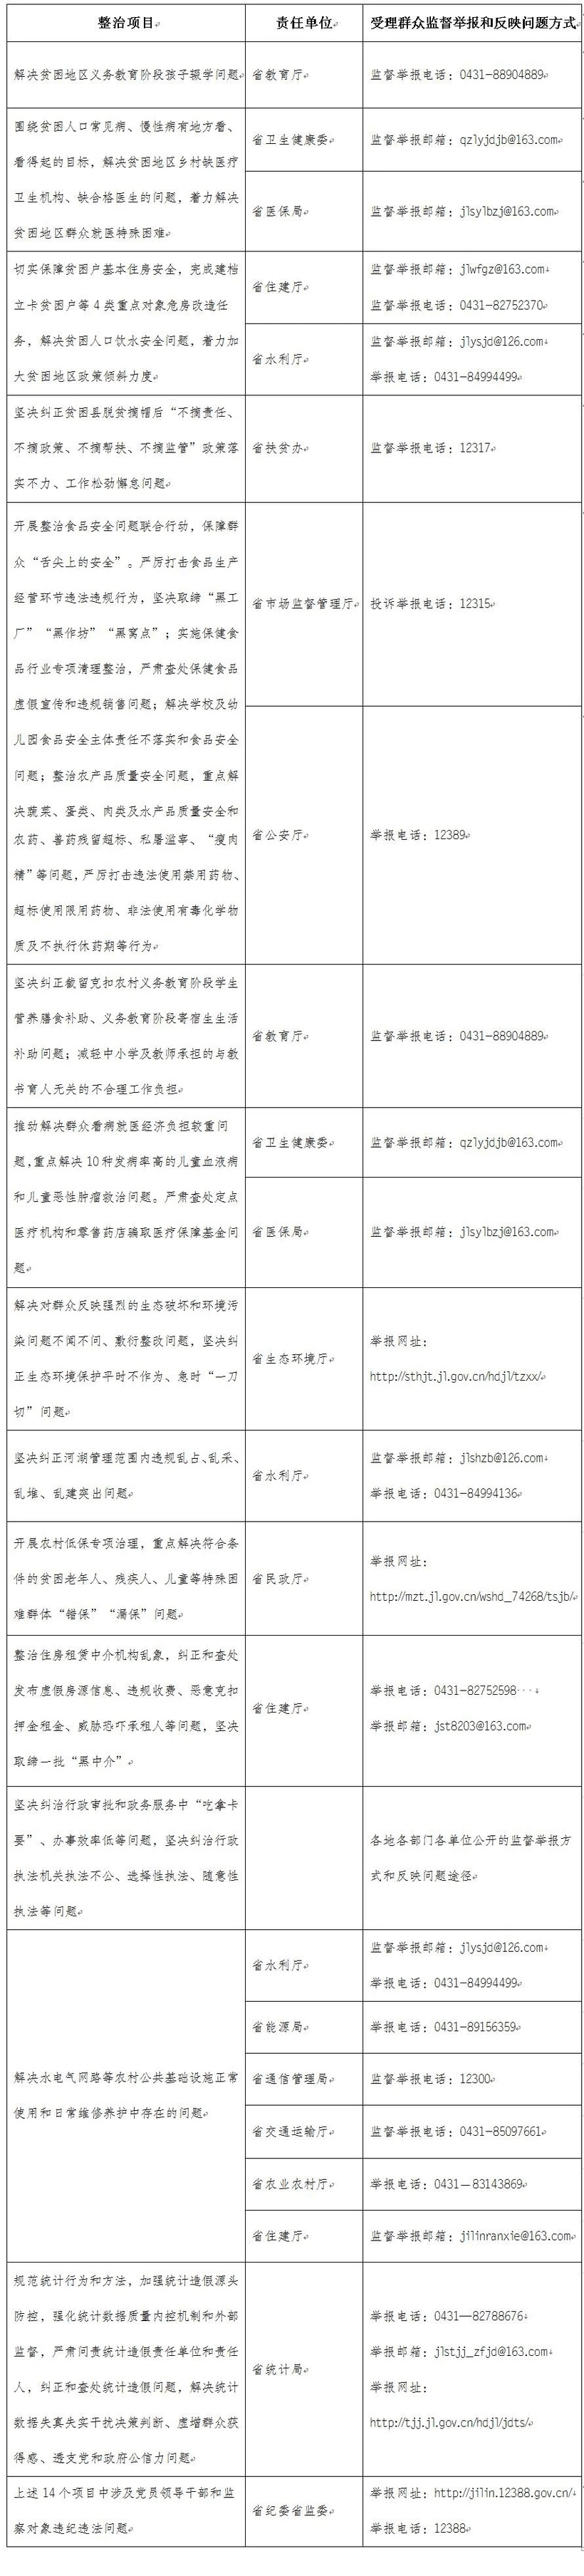 吉林省紀委監委公佈專項整治漠視侵害群眾利益問題監督舉報方式